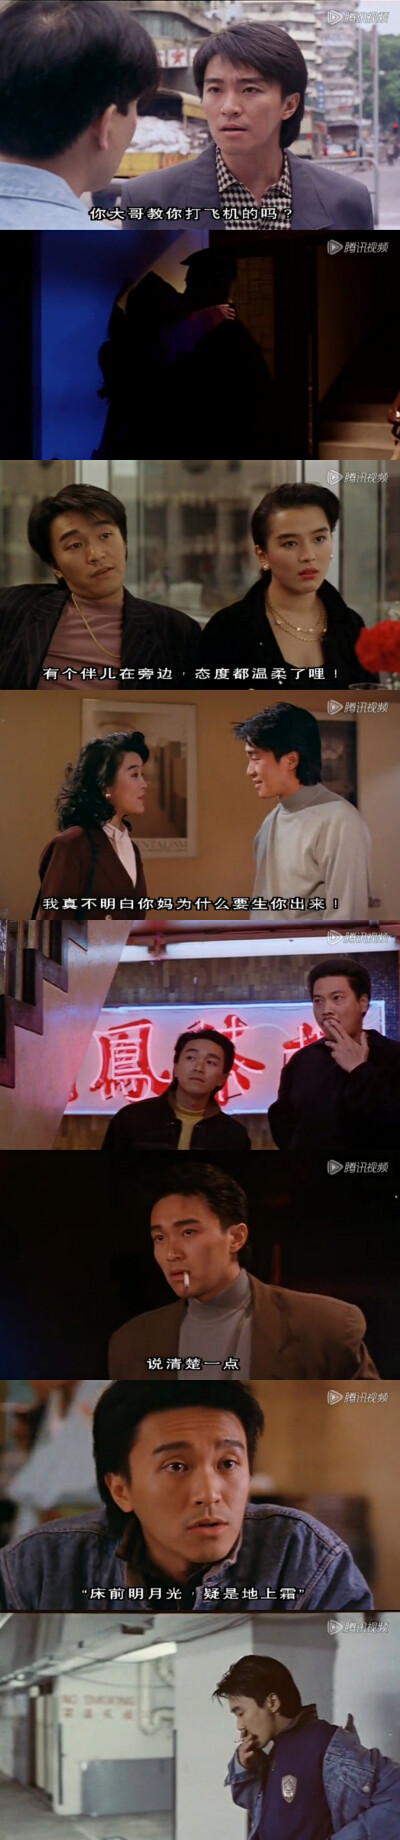 1990《龙凤茶楼》莫少聪,周星驰